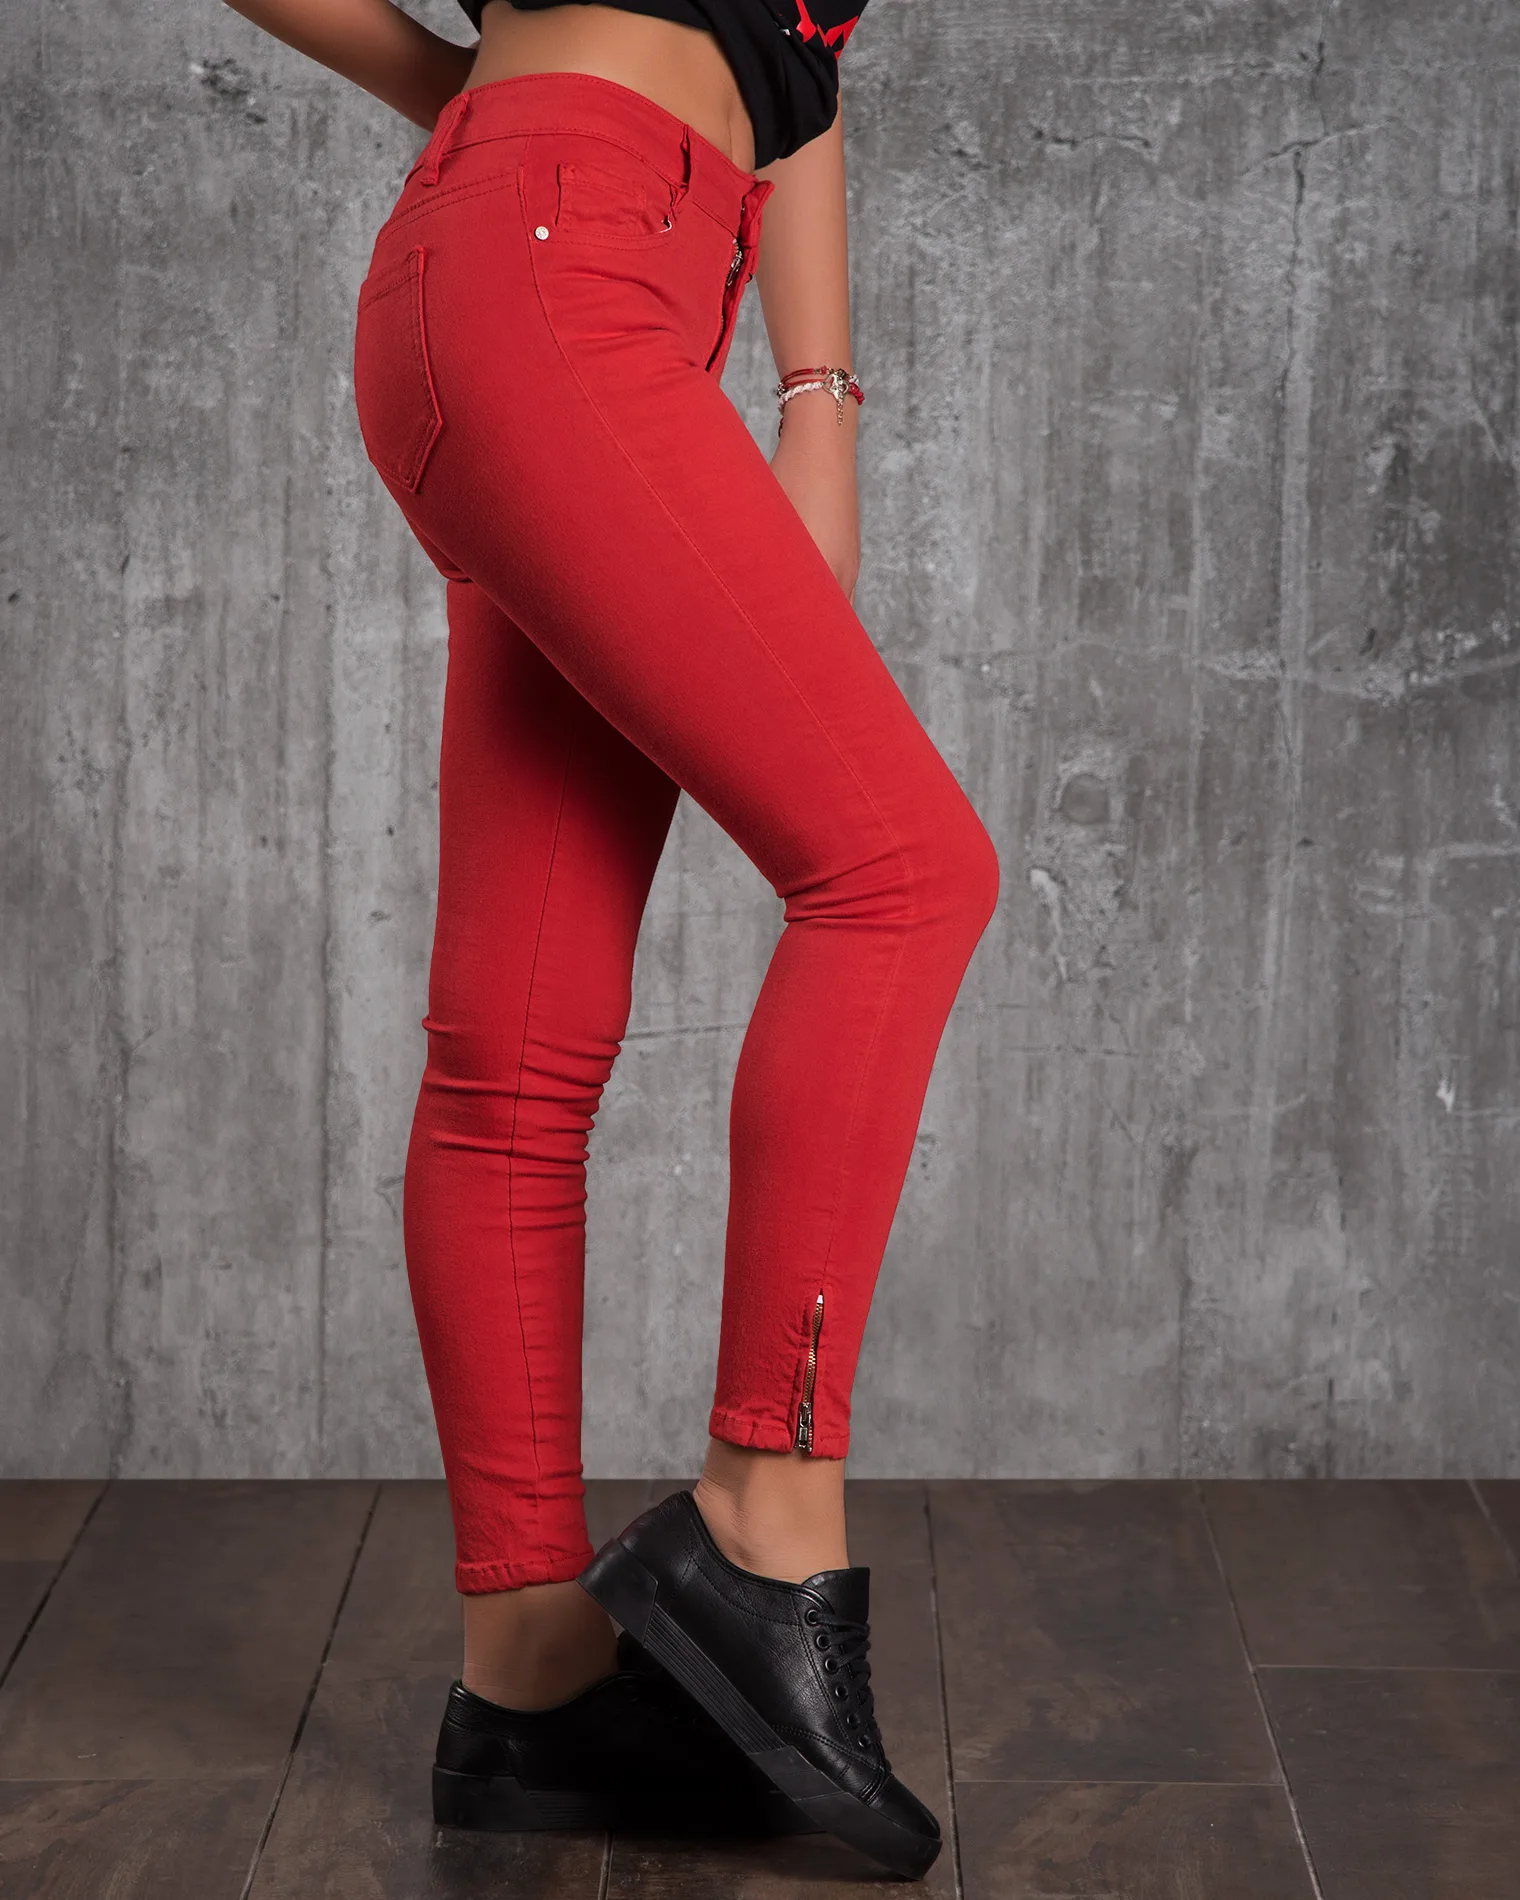 Панталон с ципове Jasmine, Червен Цвят